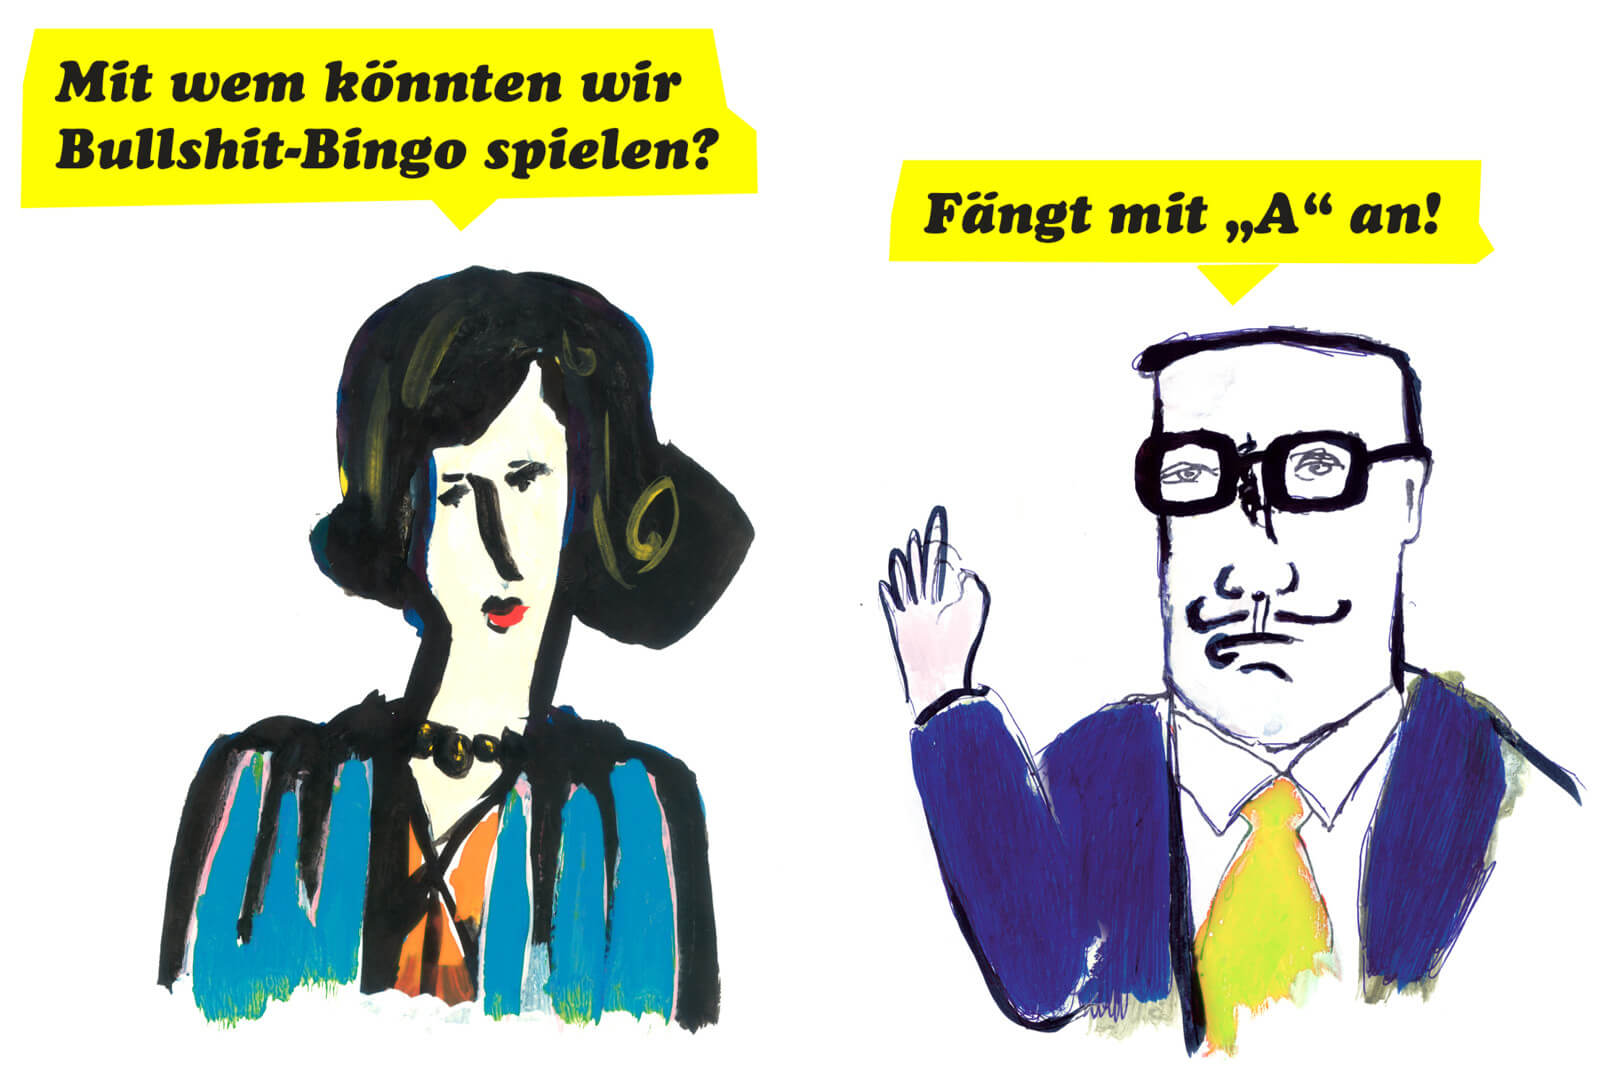 zwei illustrierte Peronen mit Sprechblasen